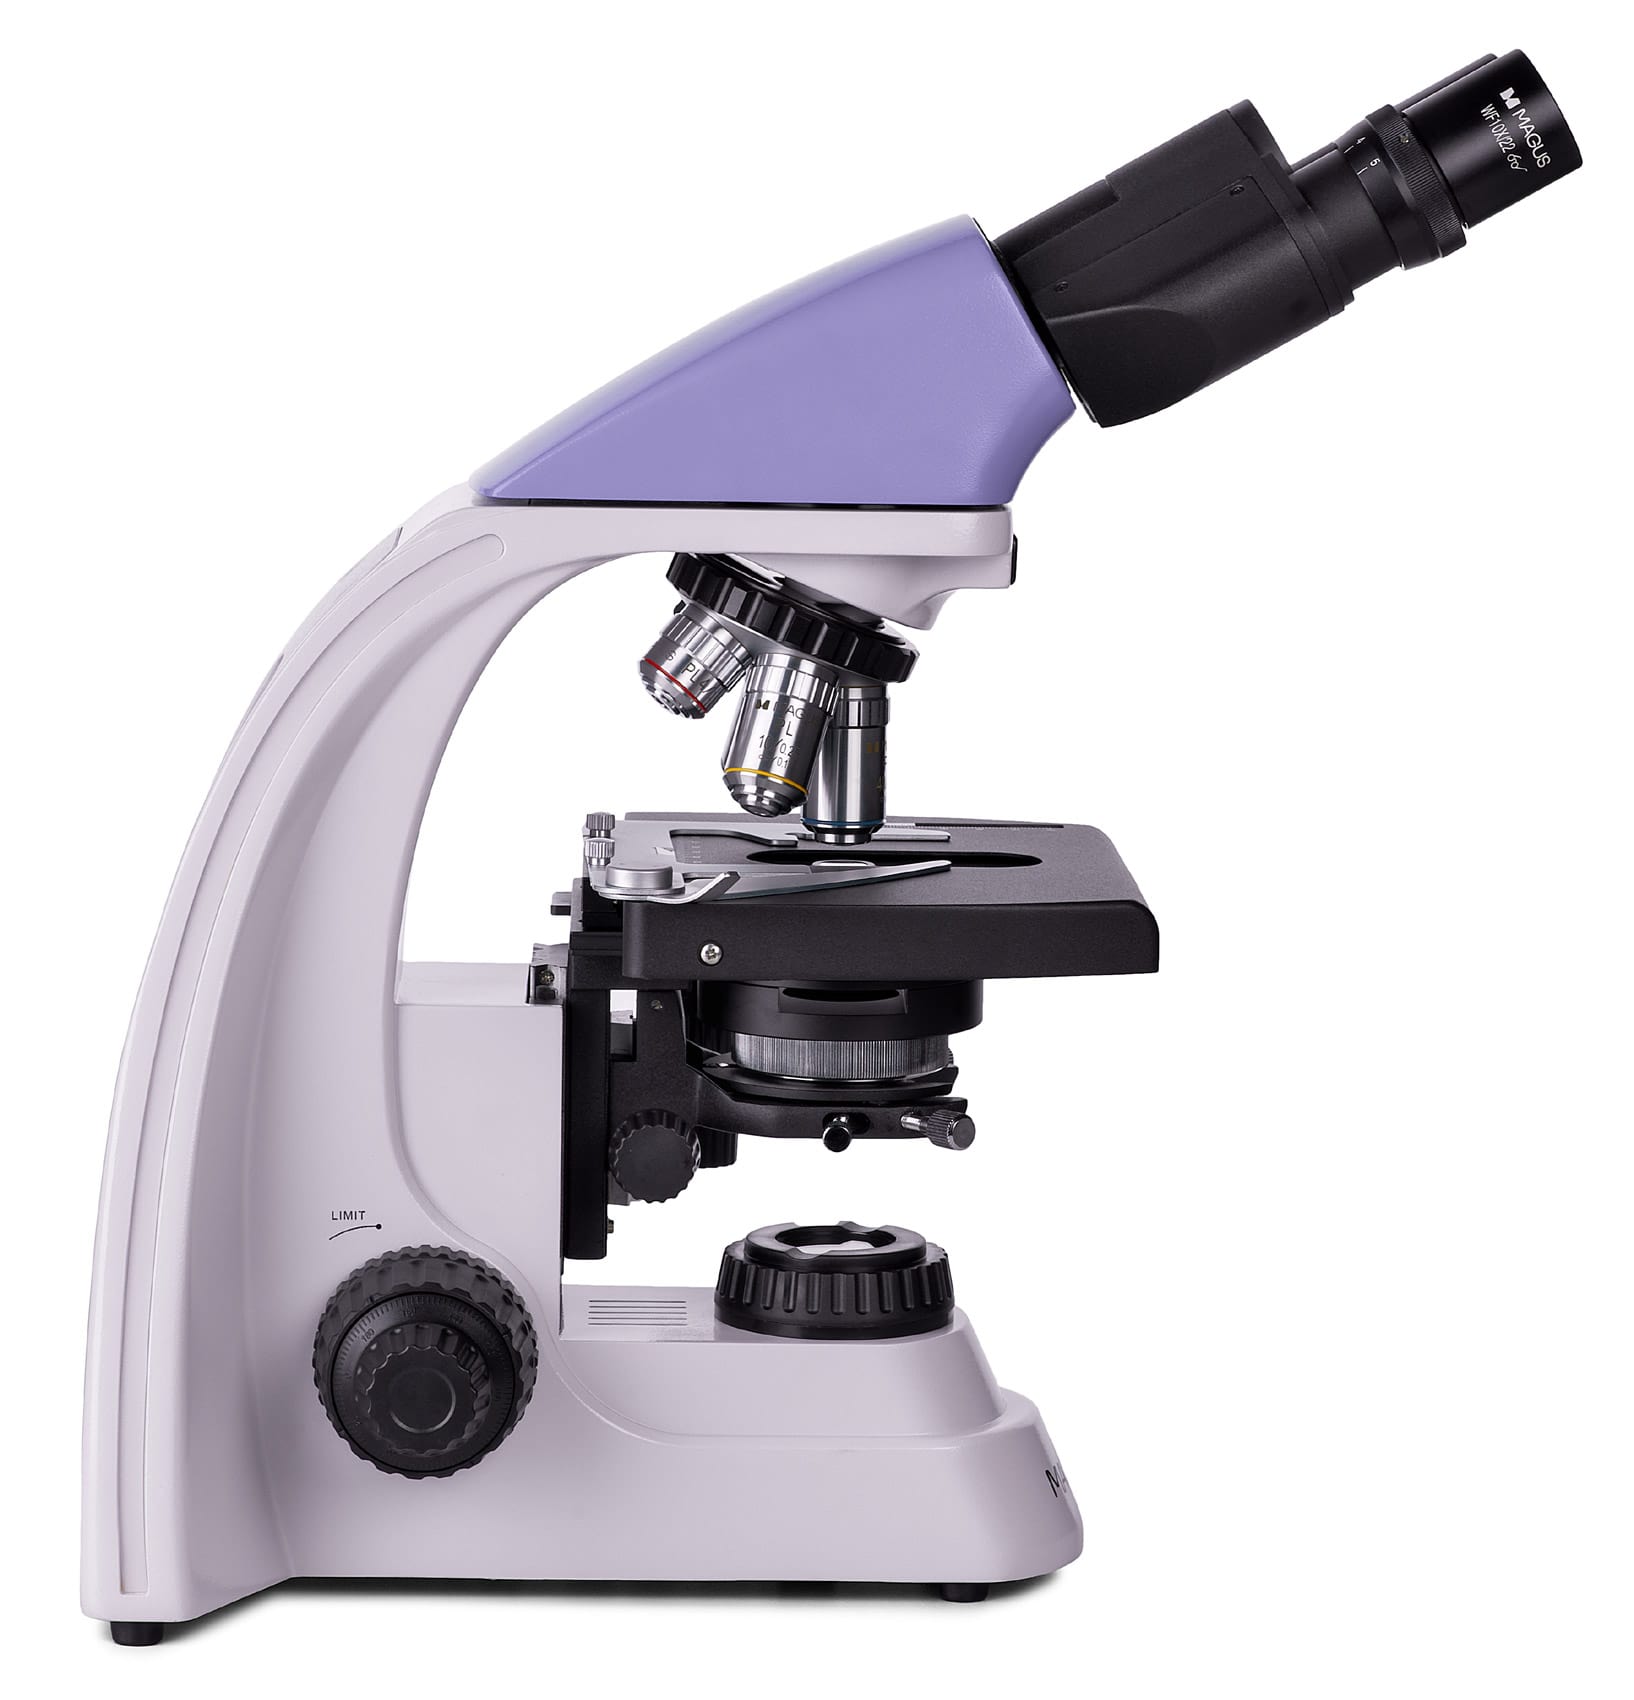 Микроскоп биологический Magus Bio 250B